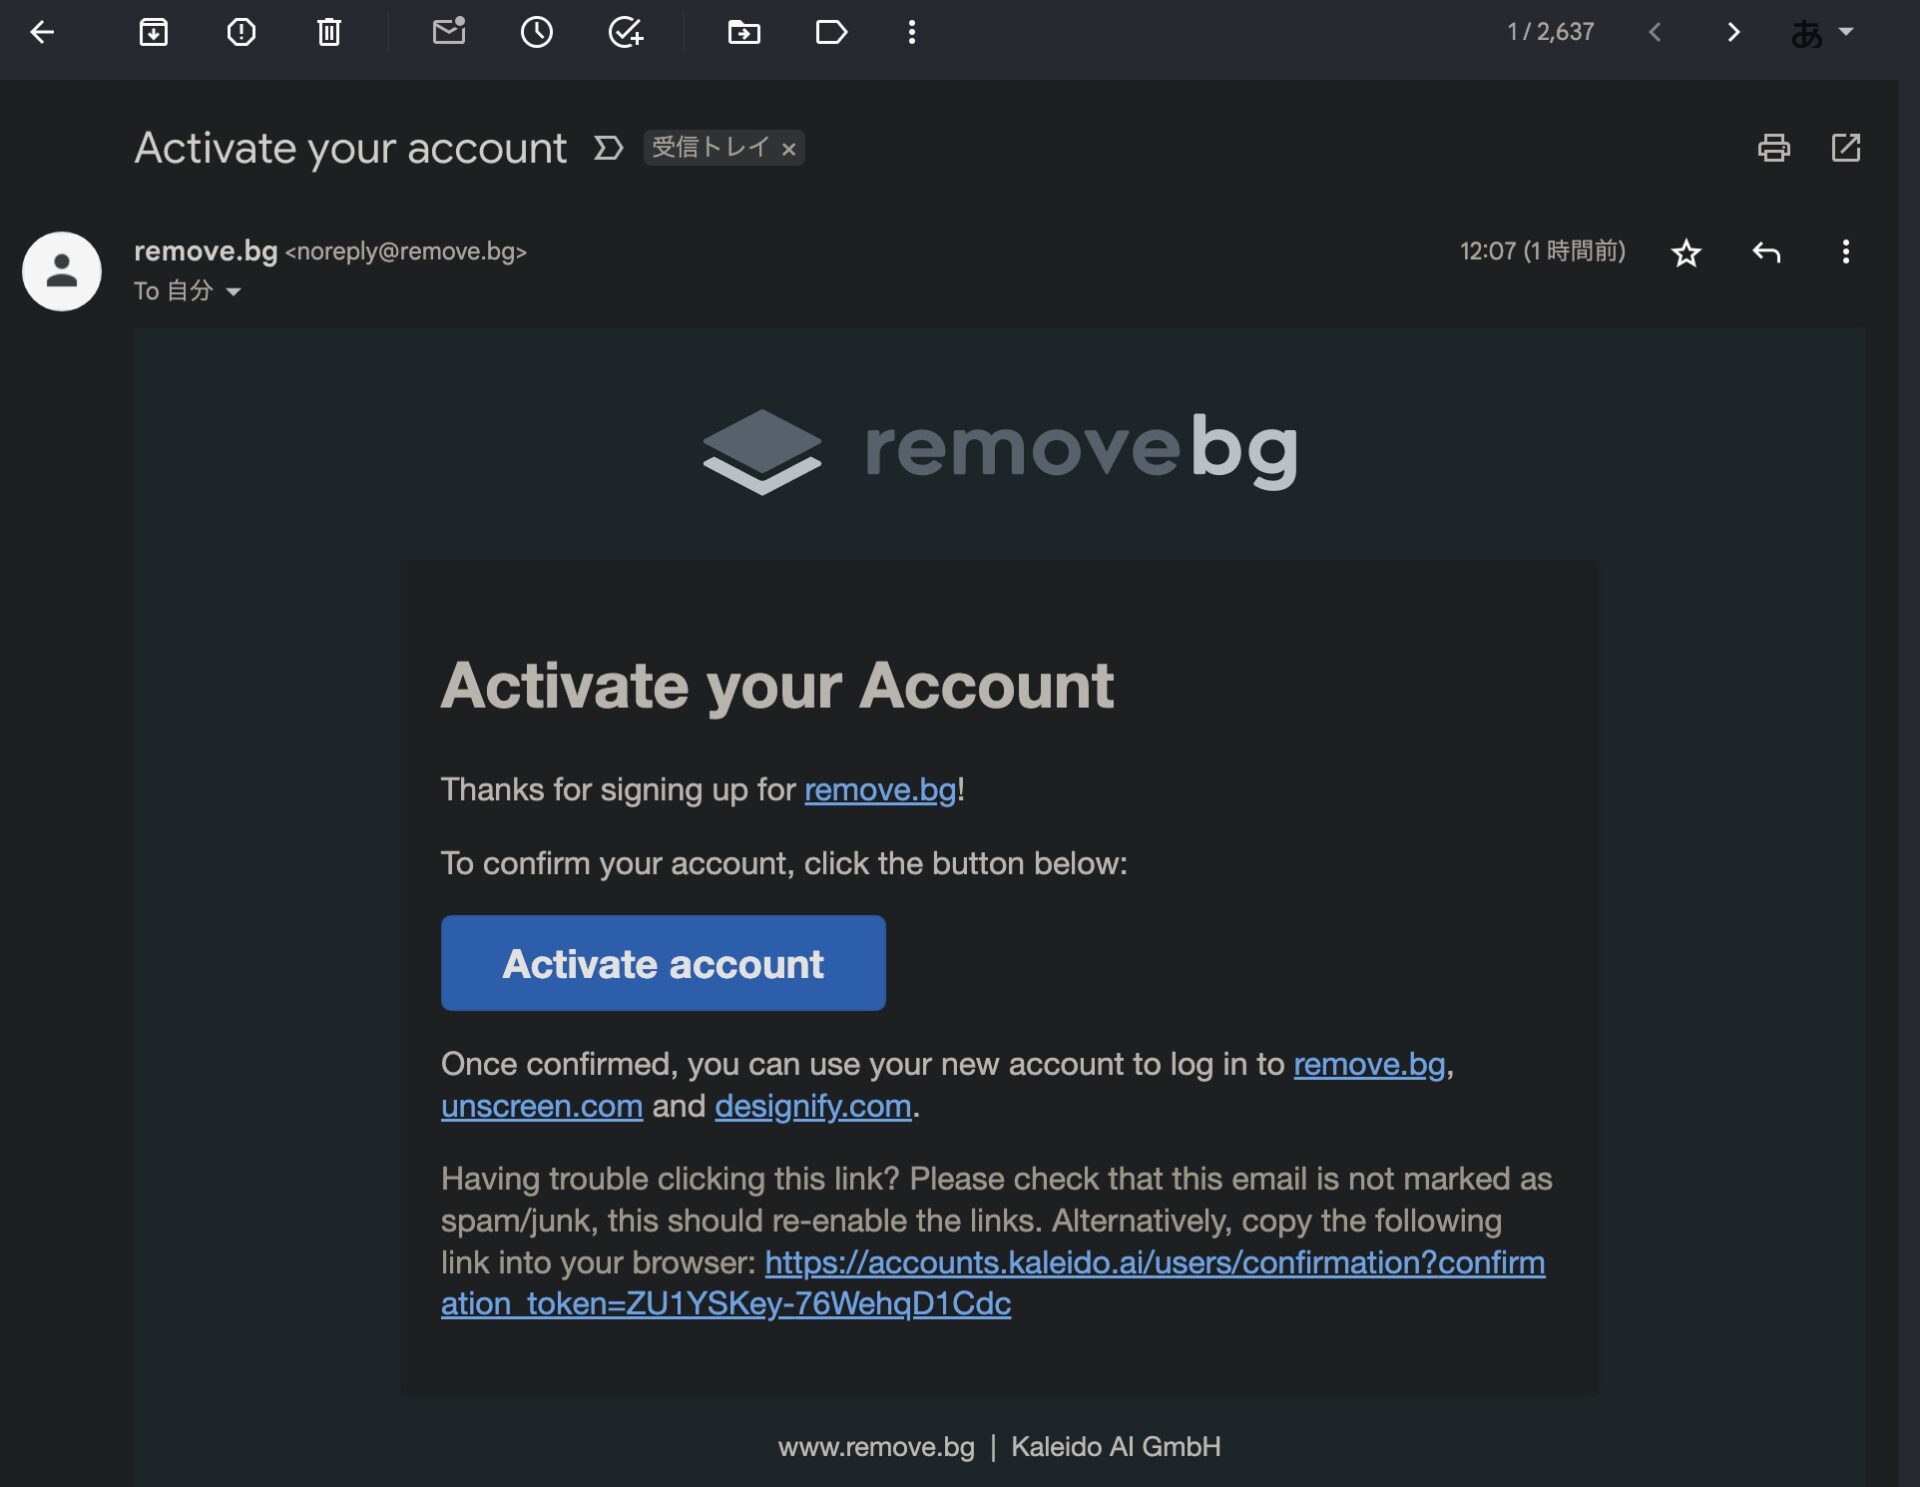 remove bgから届いた認証メールの画面。